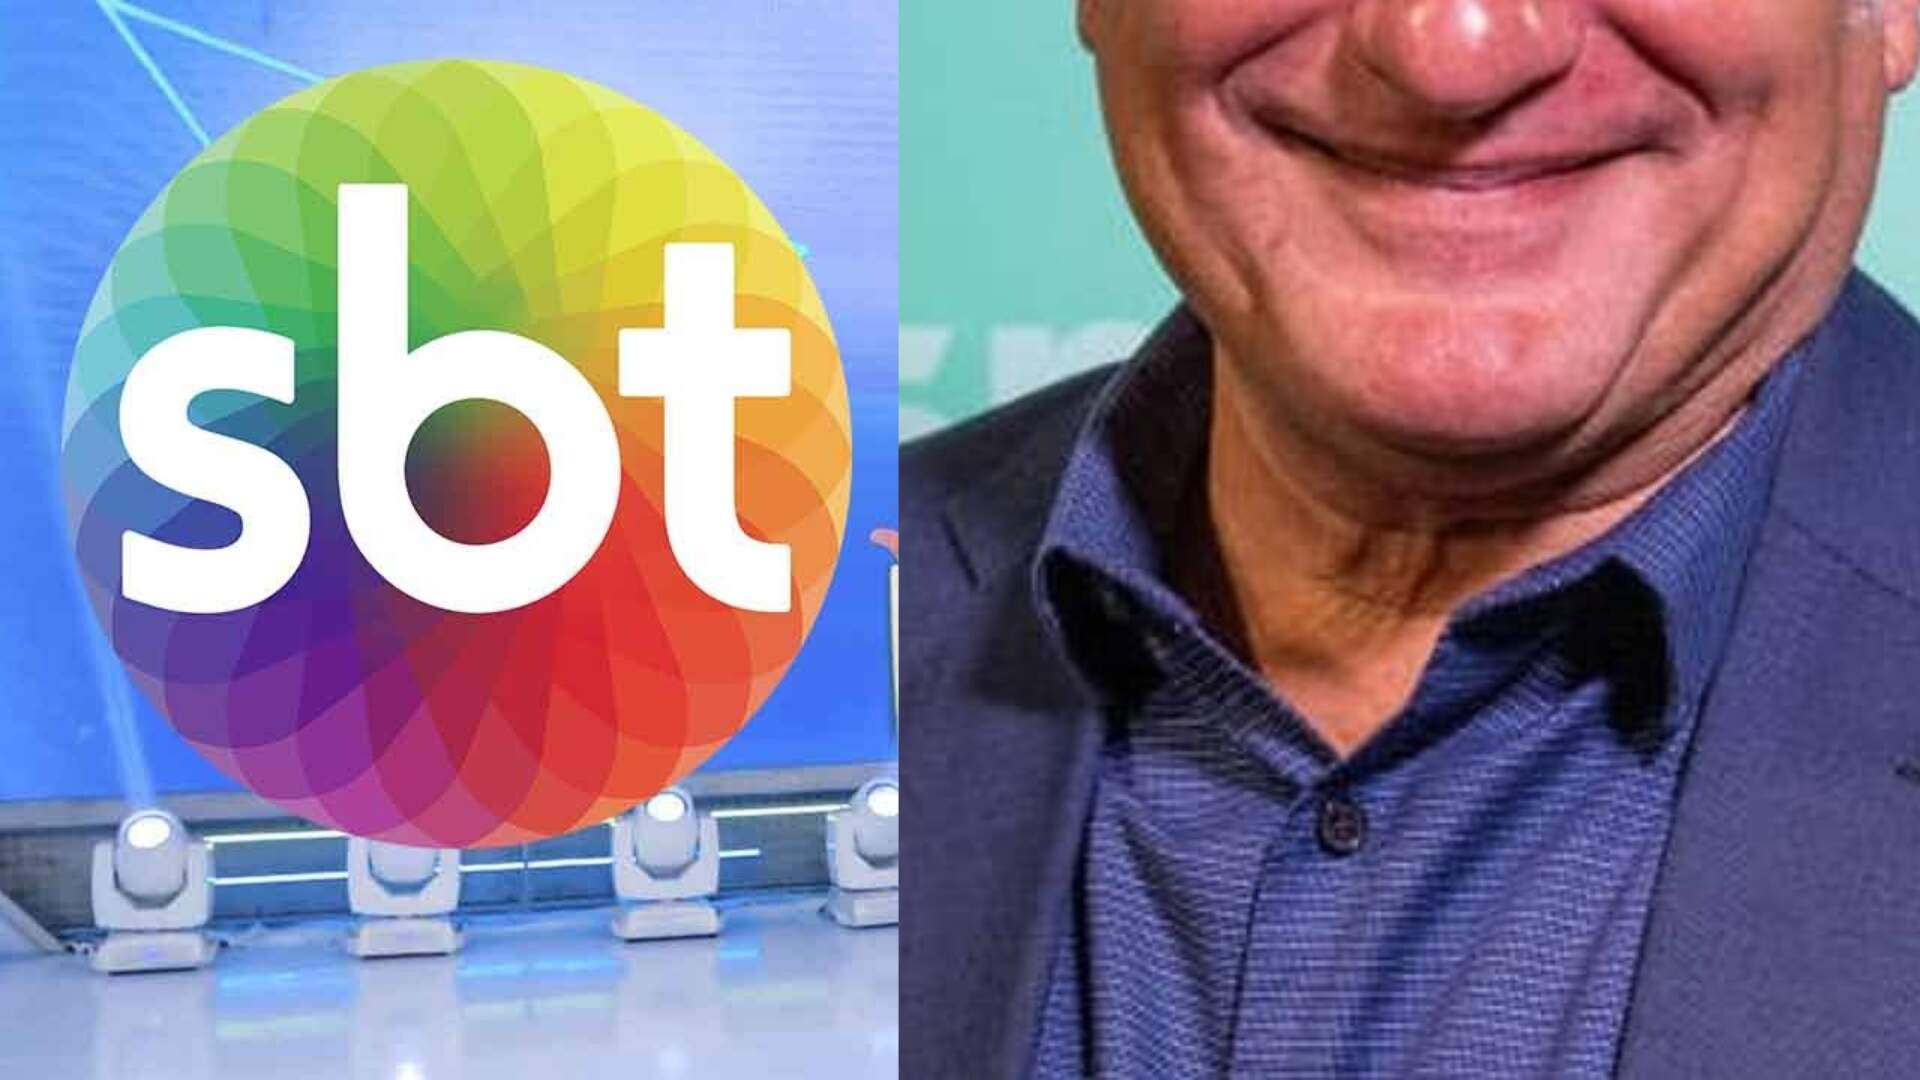 Narrador veterano da TV Globo que foi demitido após 35 anos vai para emissora rival: “Novidades!” - Metropolitana FM